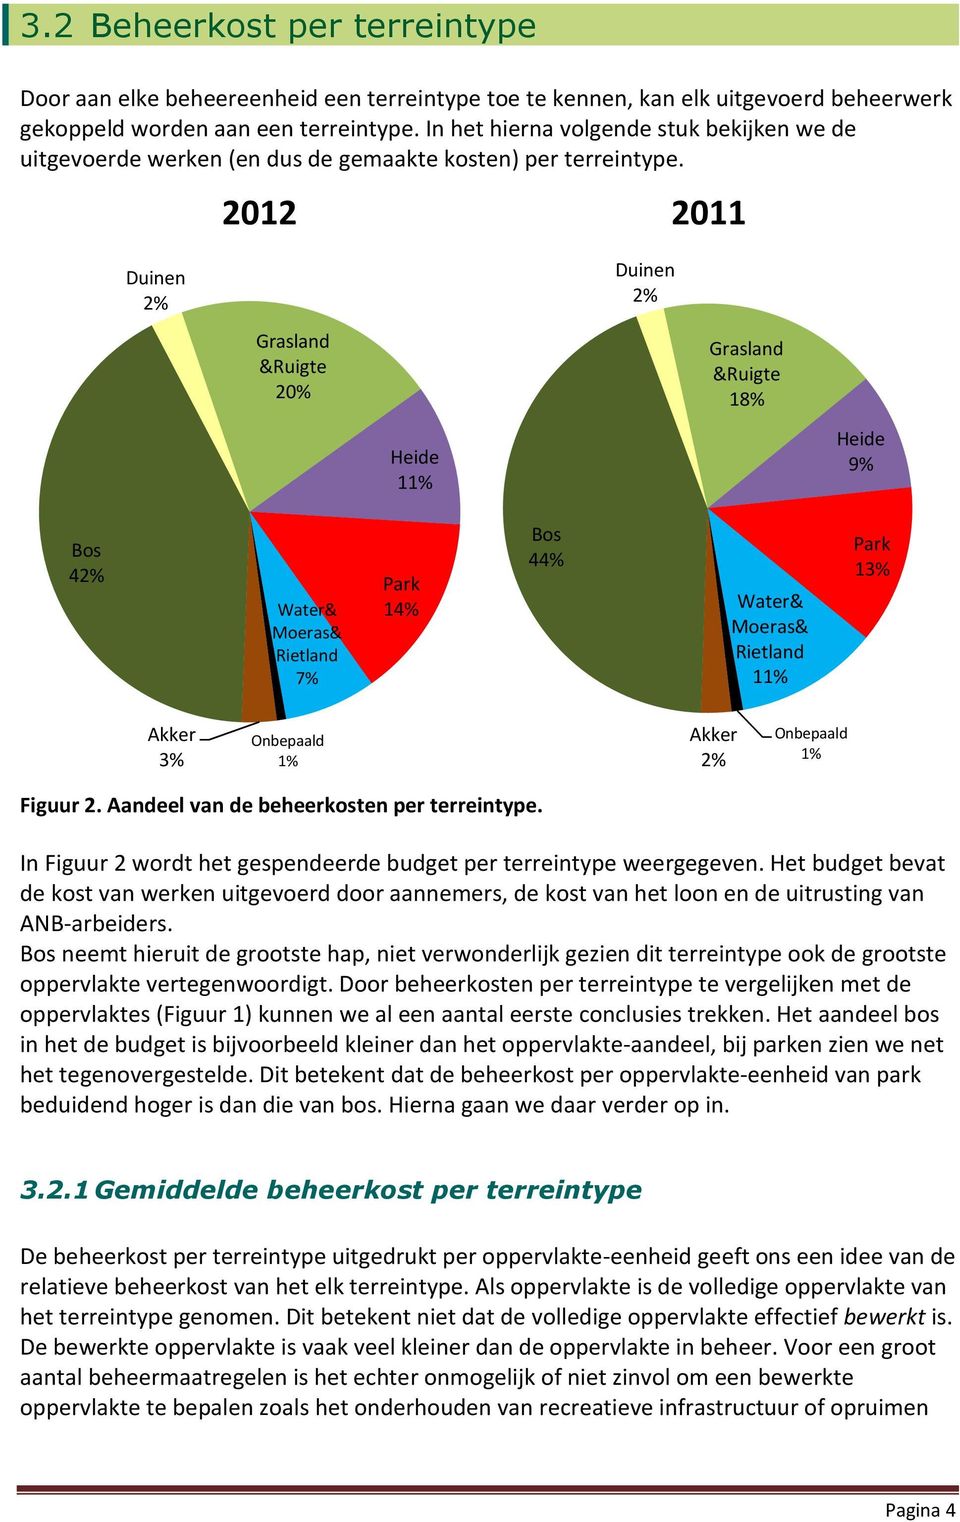 2012 Duinen 2% Duinen 2% Grasland &Ruigte 20% Grasland &Ruigte 18% Heide 11% Heide 9% Bos 42% Water& Moeras& Rietland 7% Park 14% Bos 44% Water& Moeras& Rietland 11% Park 13% Akker 3% Onbepaald 1%